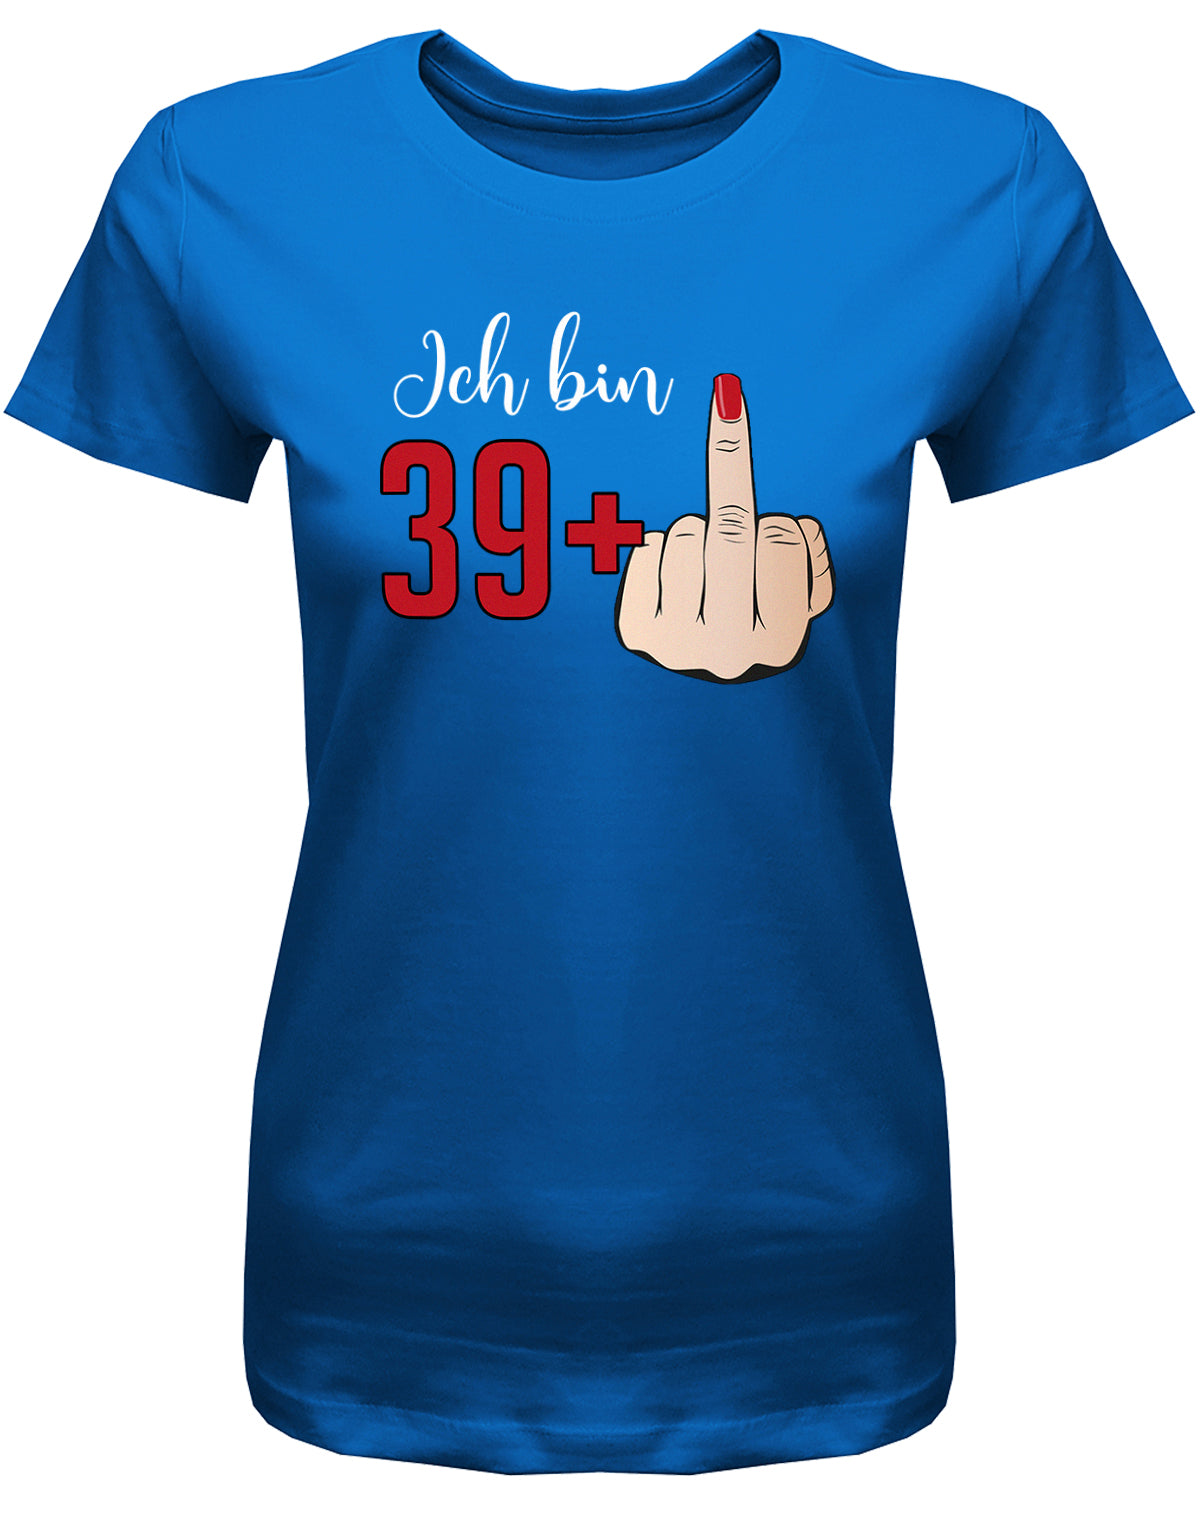 Lustiges T-Shirt zum 40 Geburtstag für die Frau Bedruckt mit Ich bin 39+ Stinkefinger. Royalblau